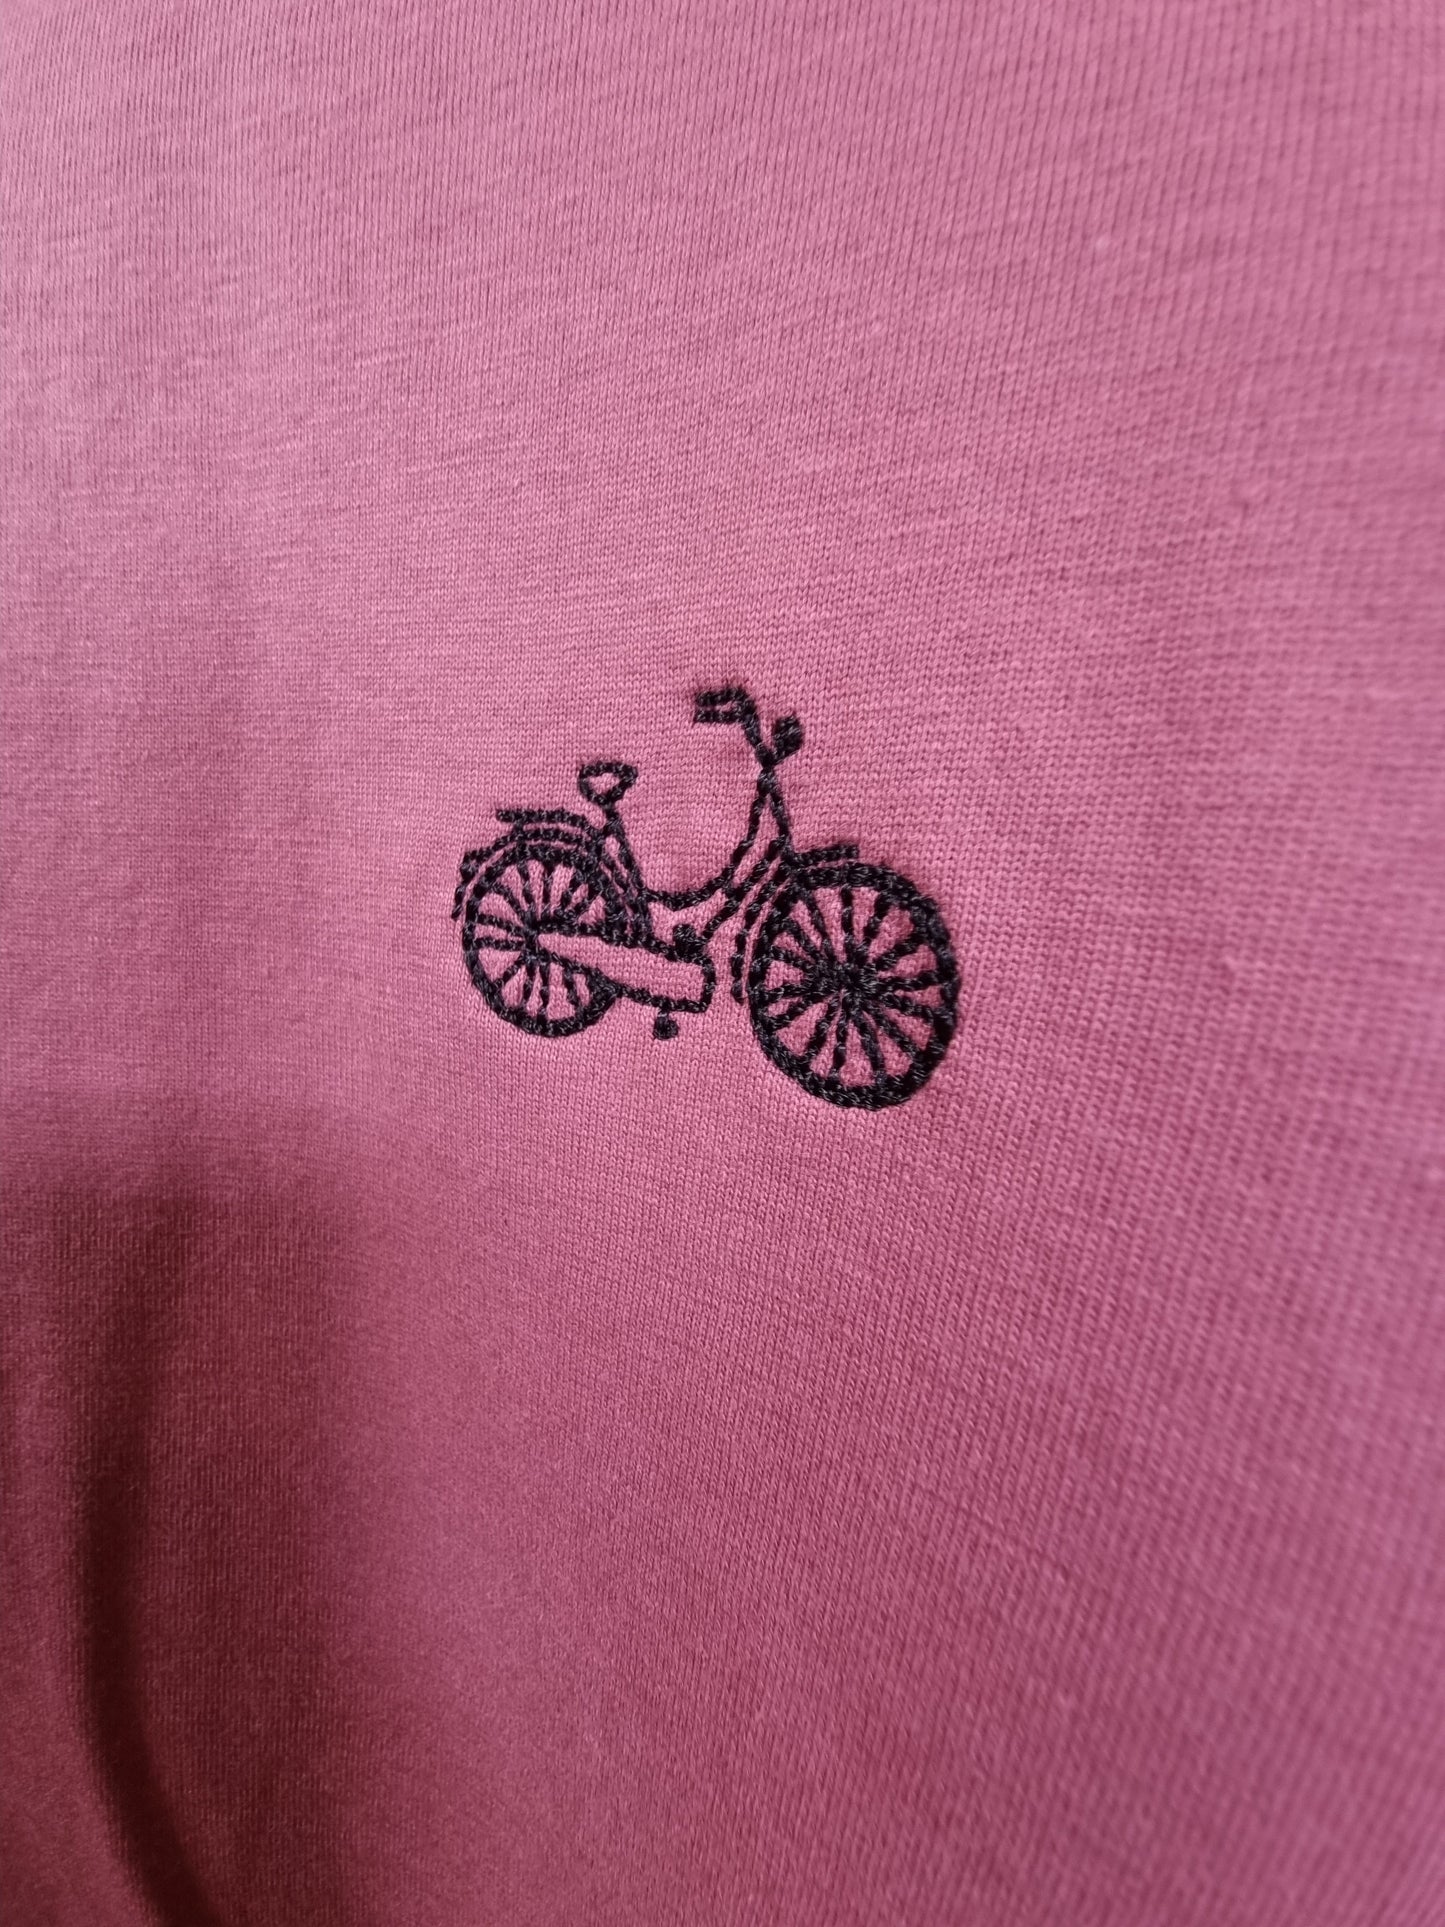 fiets hibiscus rose organic cotton unisex t-shirt te koop in de webshop van Almost Summer Amsterdam